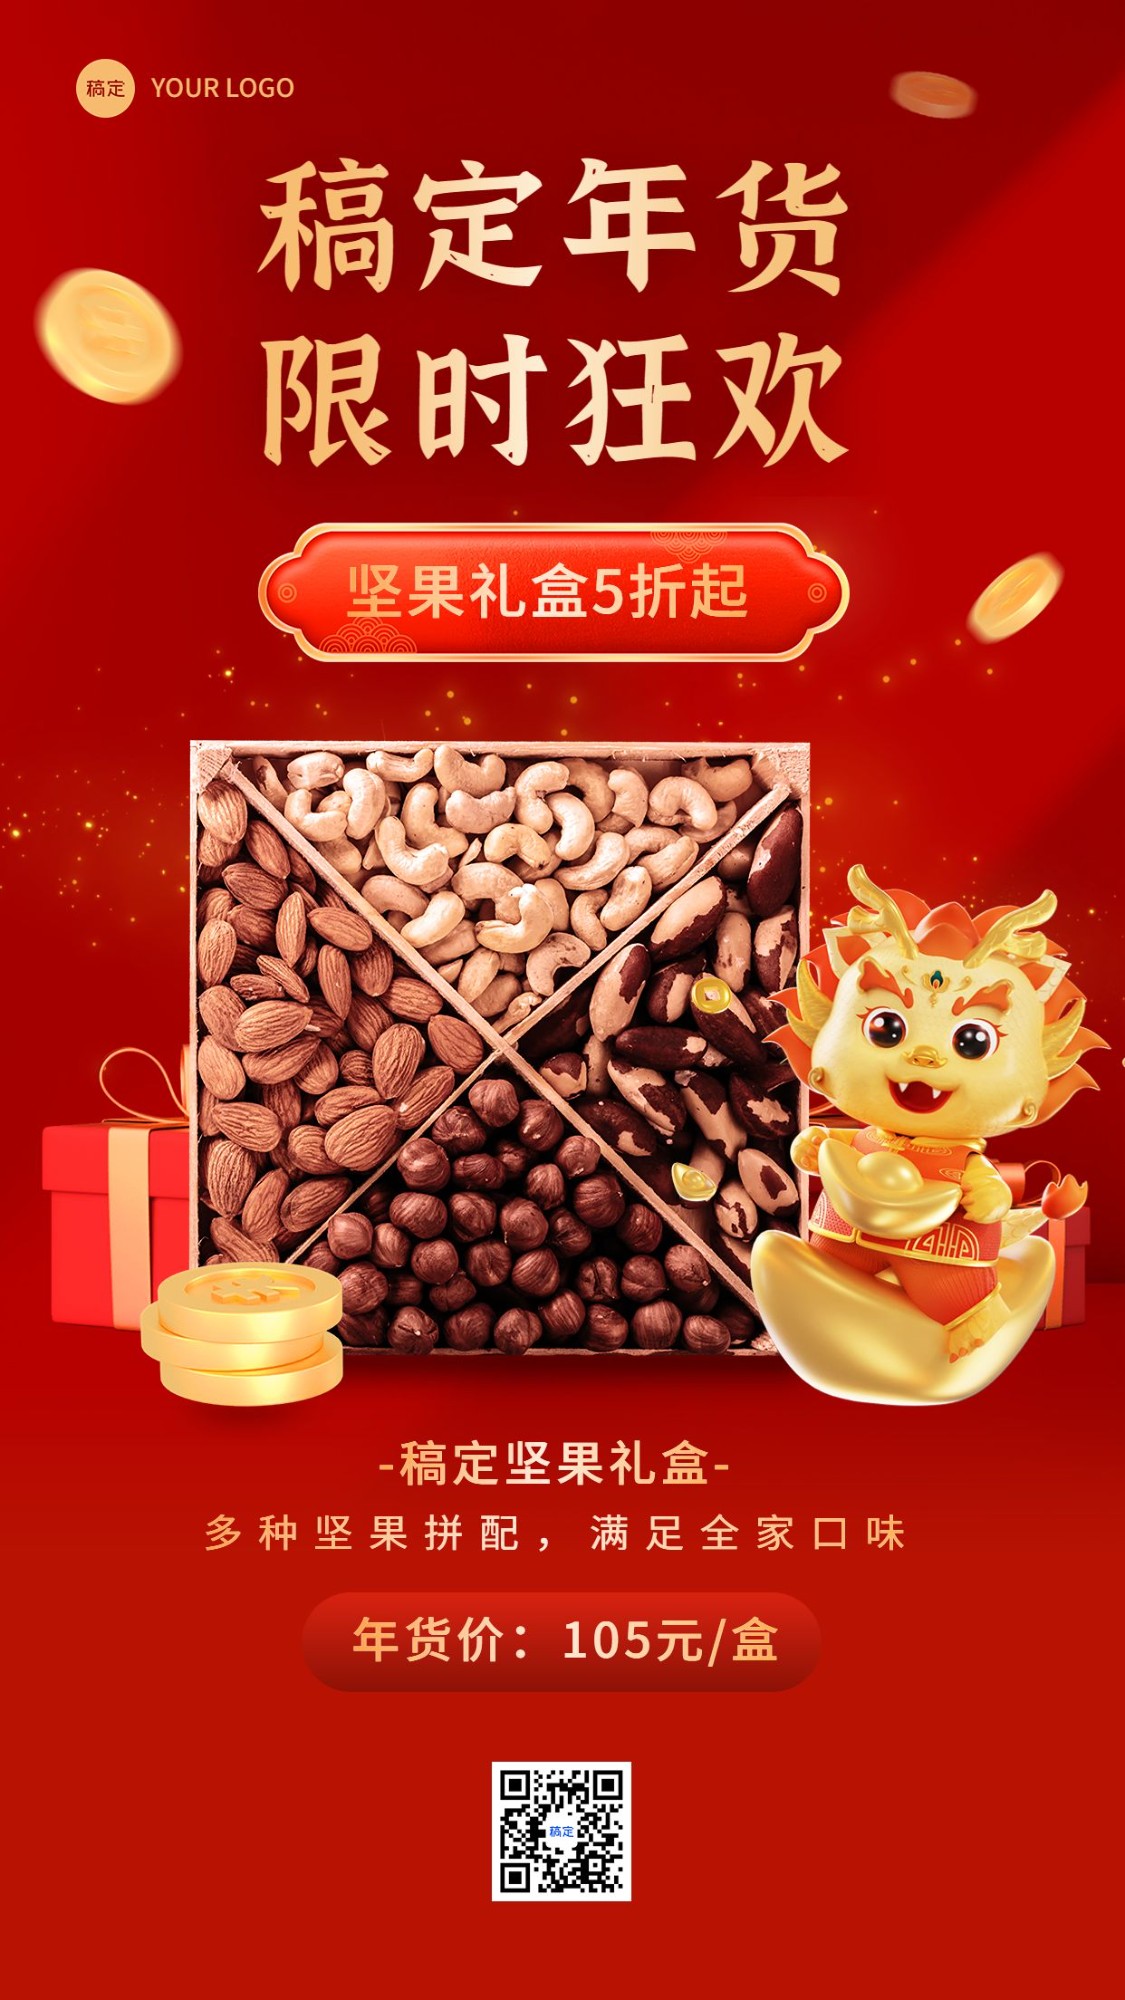 春节年货促销活动产品展示营销3D手机海报